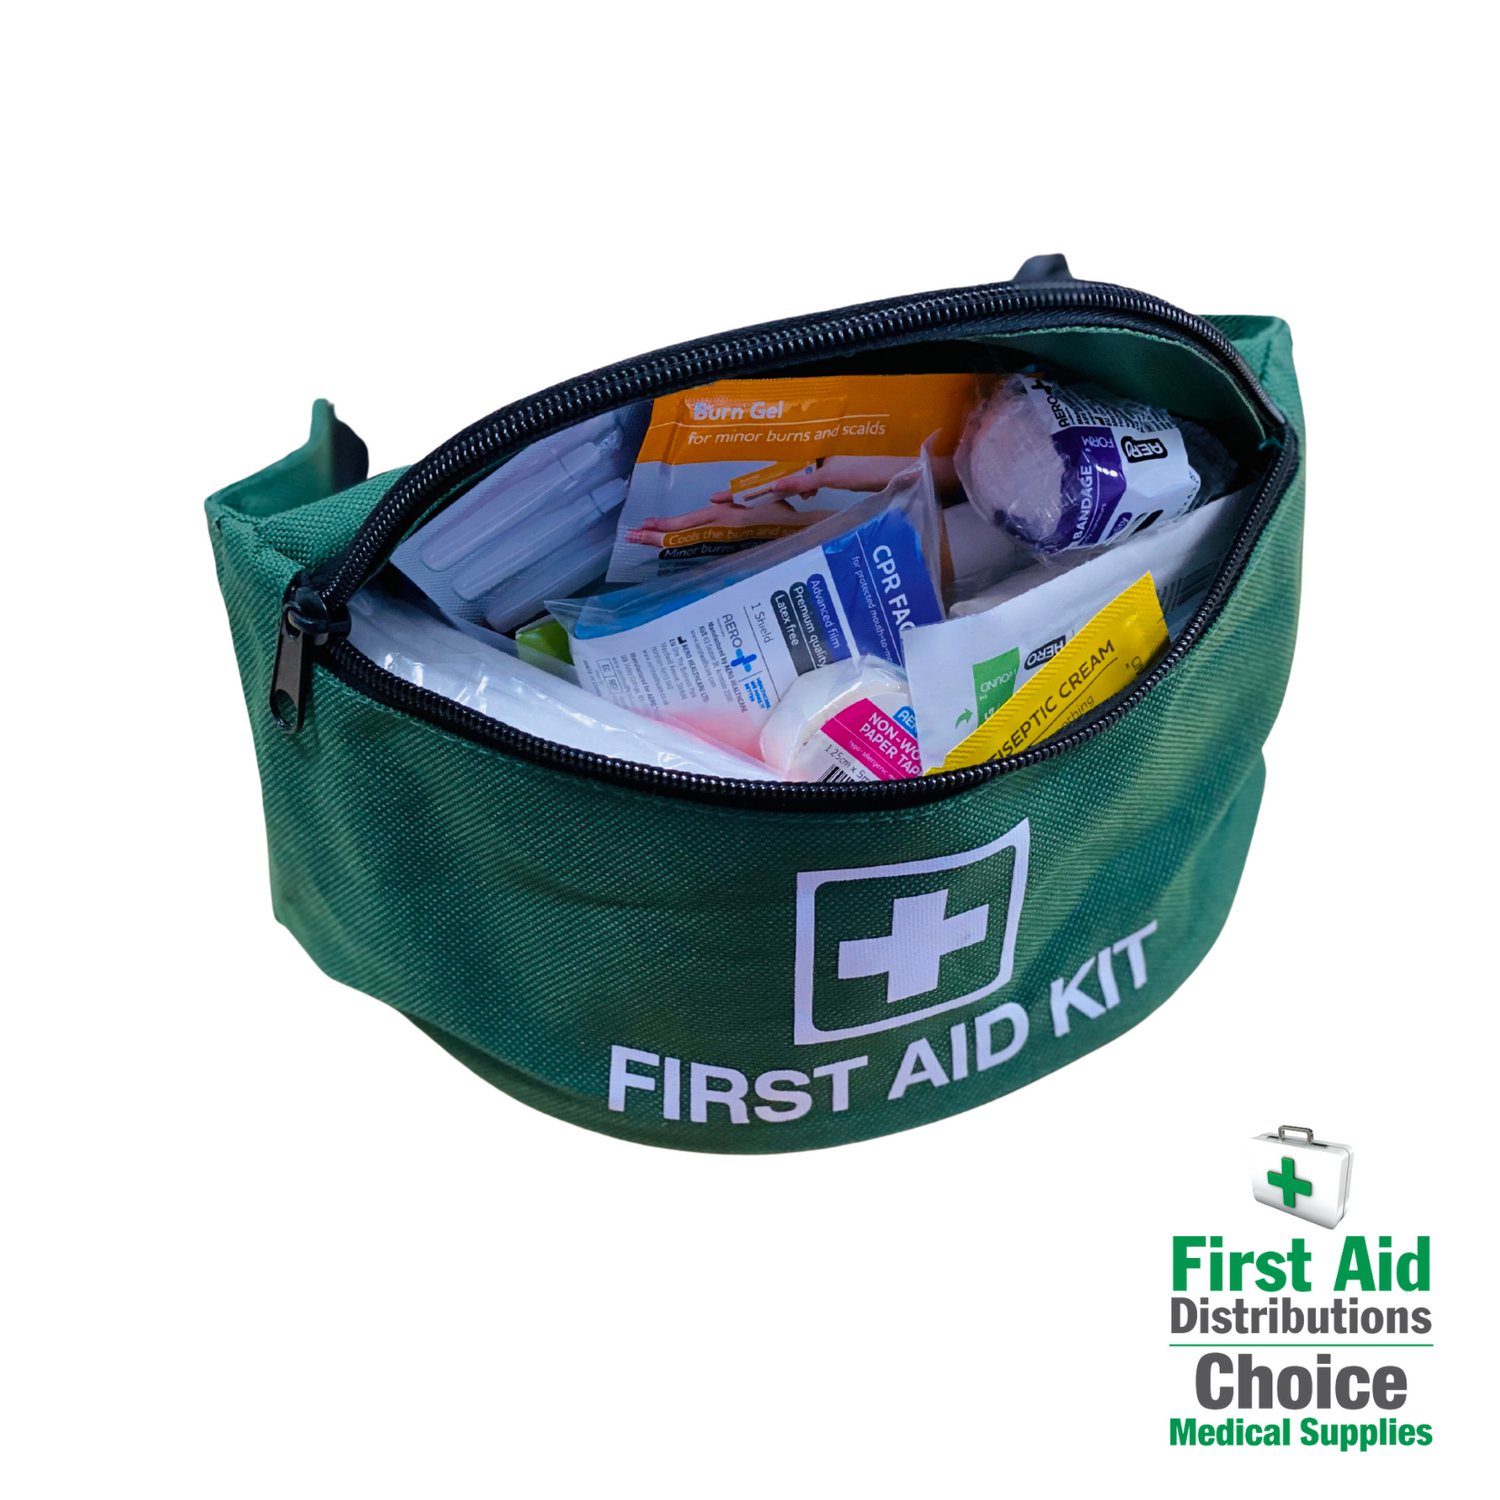 First aid kits - Schools